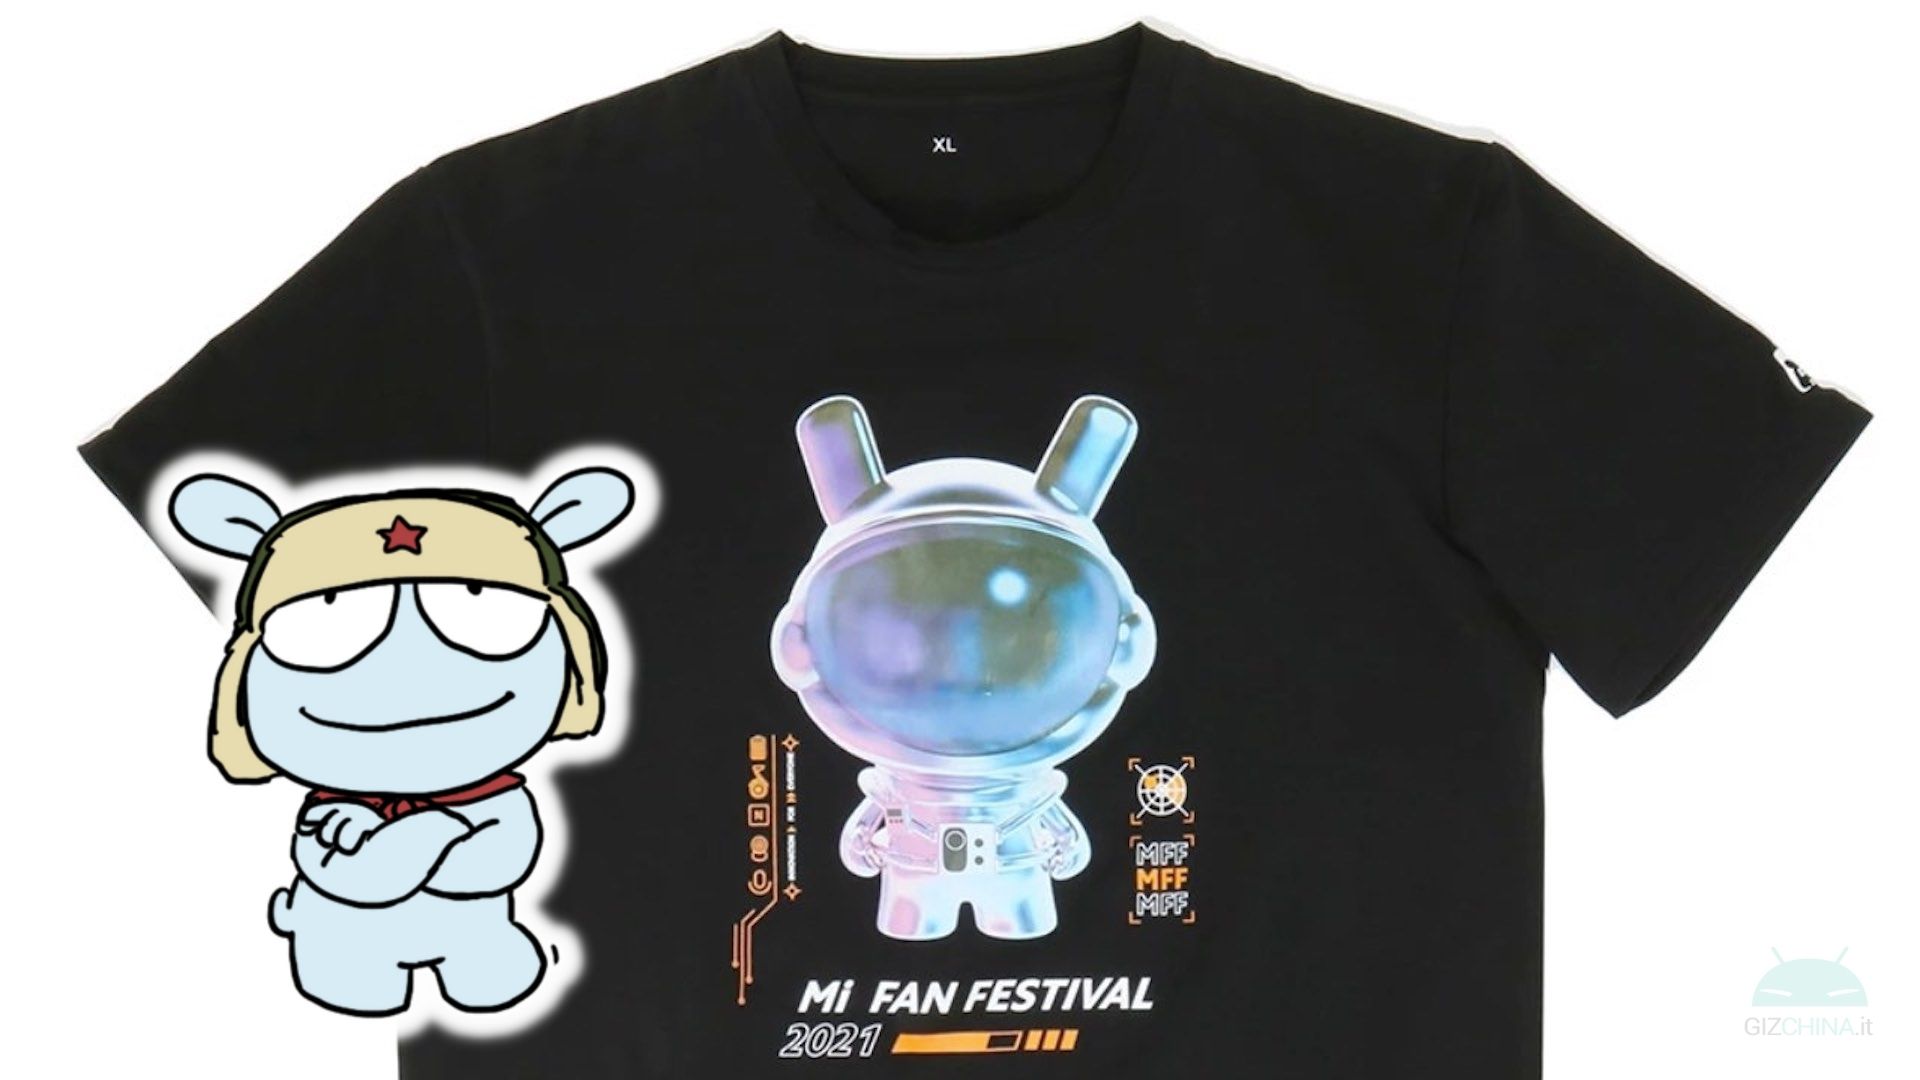 Mi fan. Футболка Xiaomi. Xiaomi Fan Festival. Mi Fan Fest 2021. Заяц Xiaomi футболка.